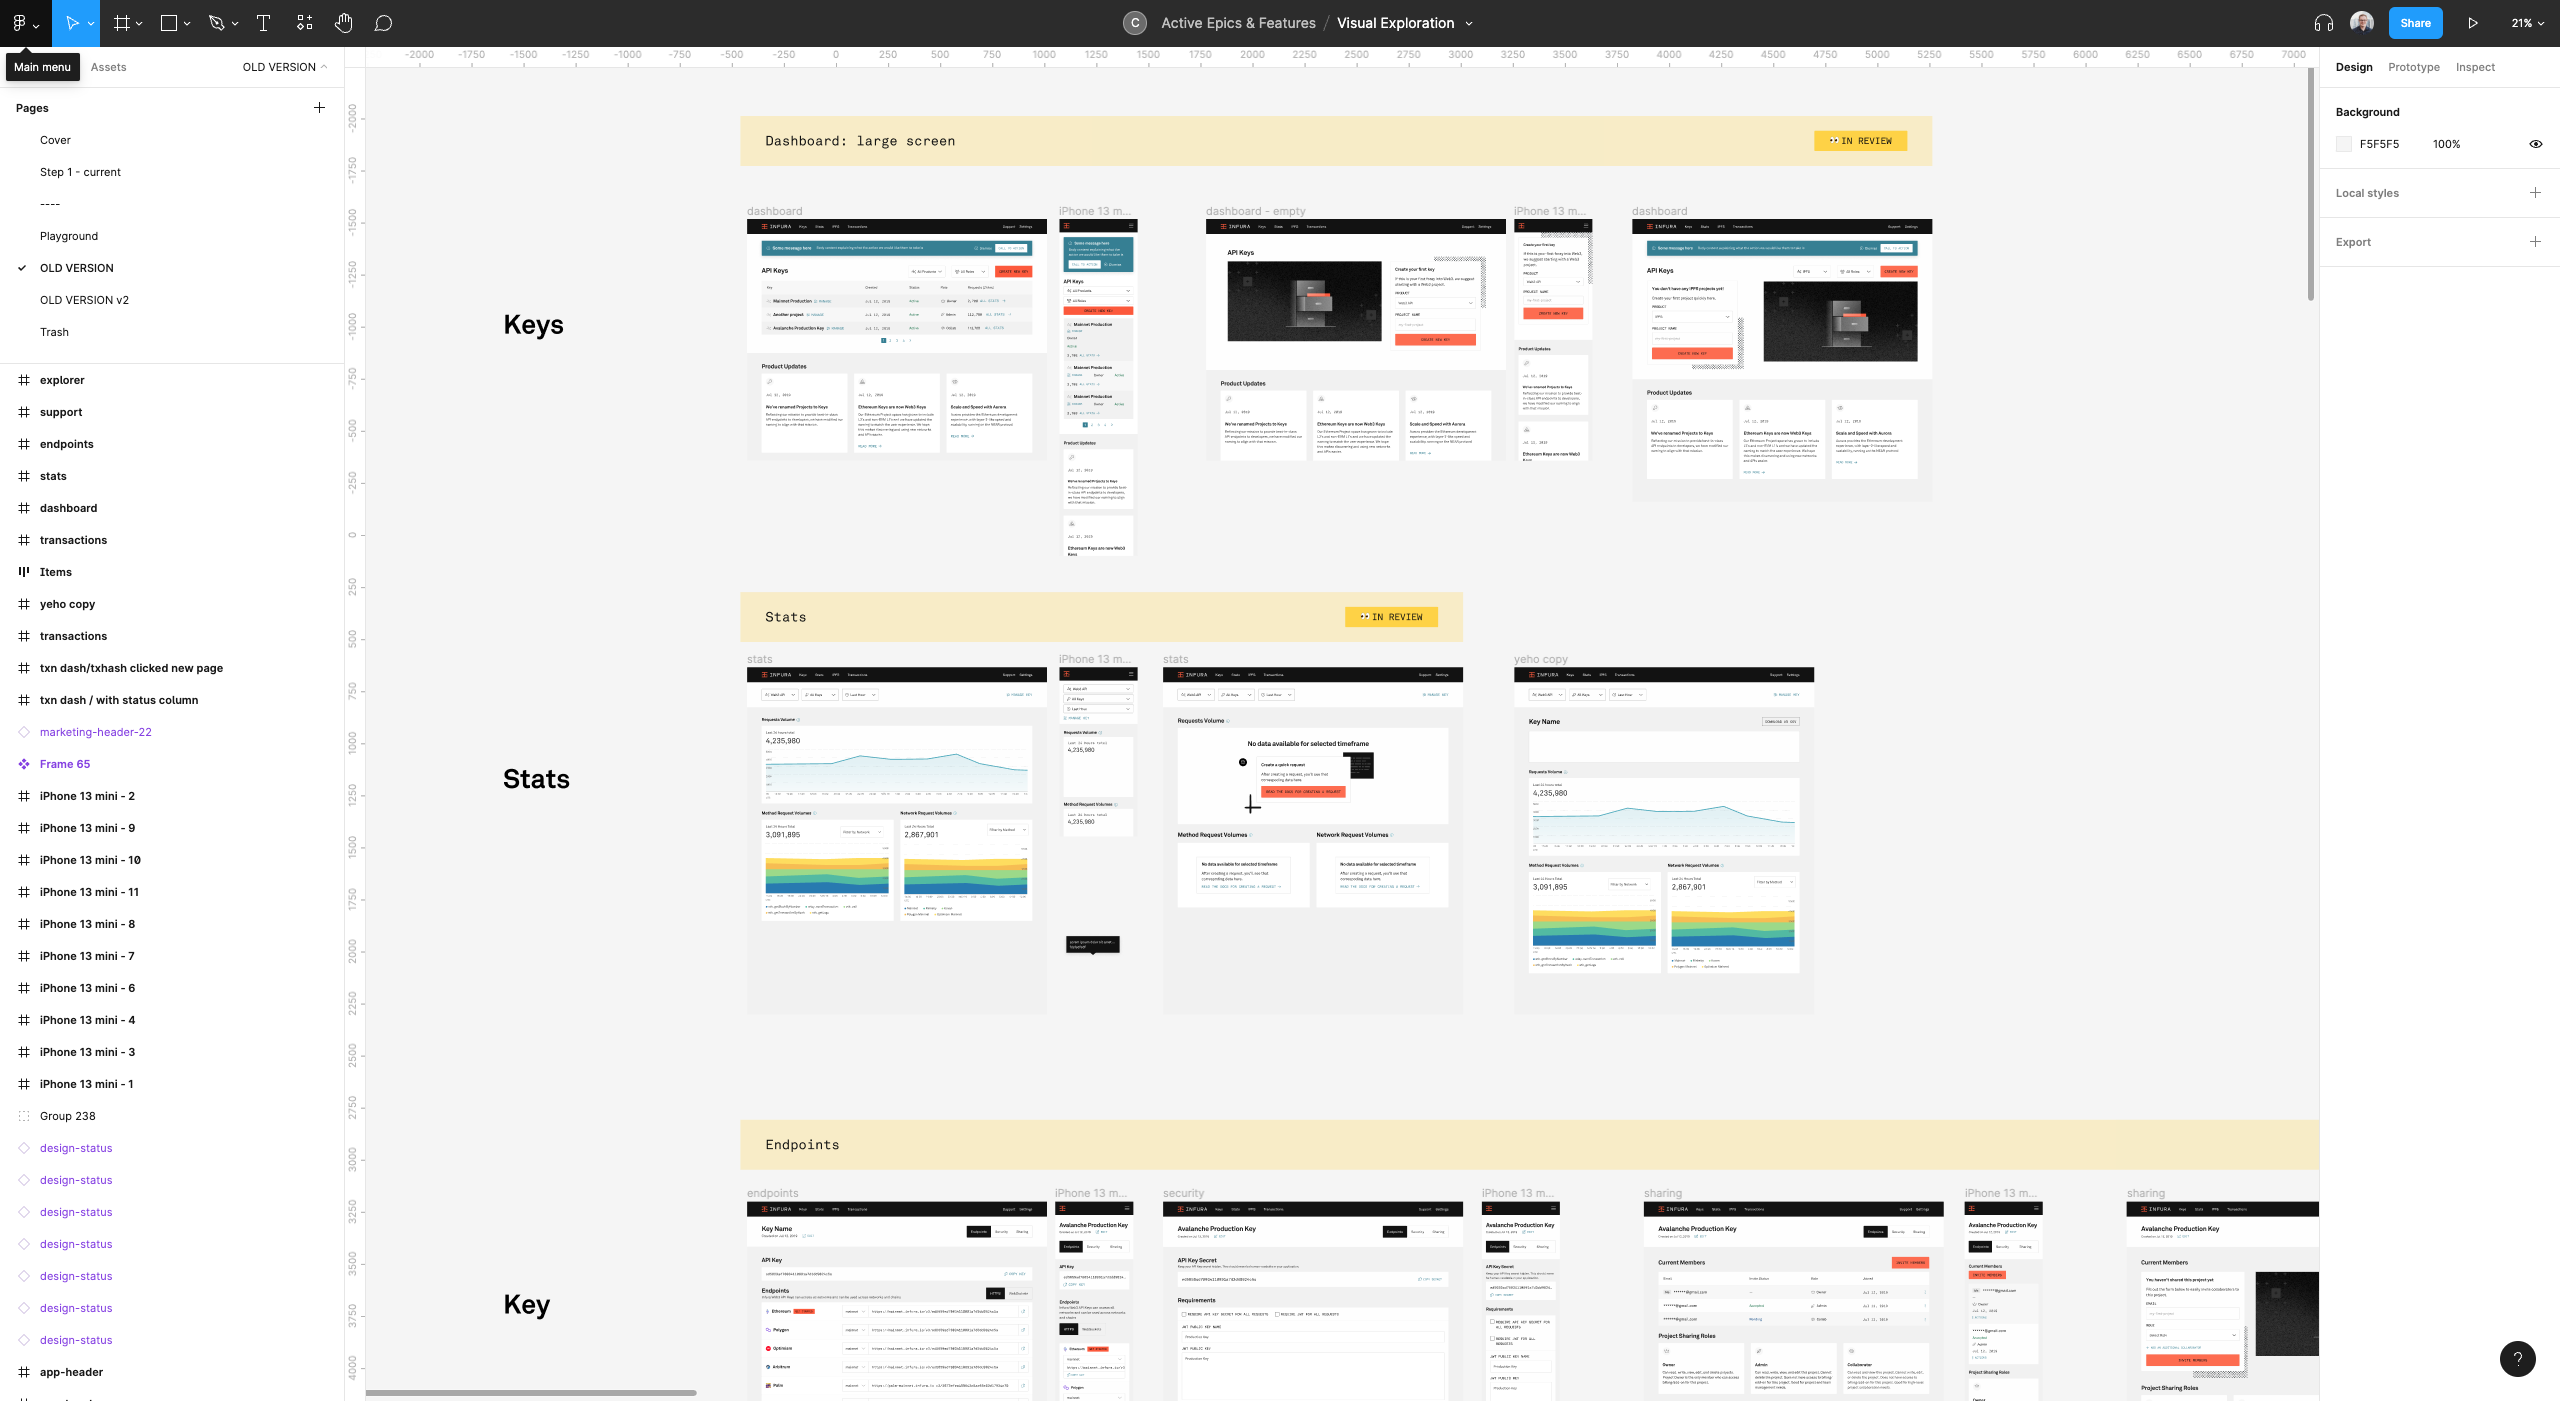 Screenshot of Figma viaual design experimentation